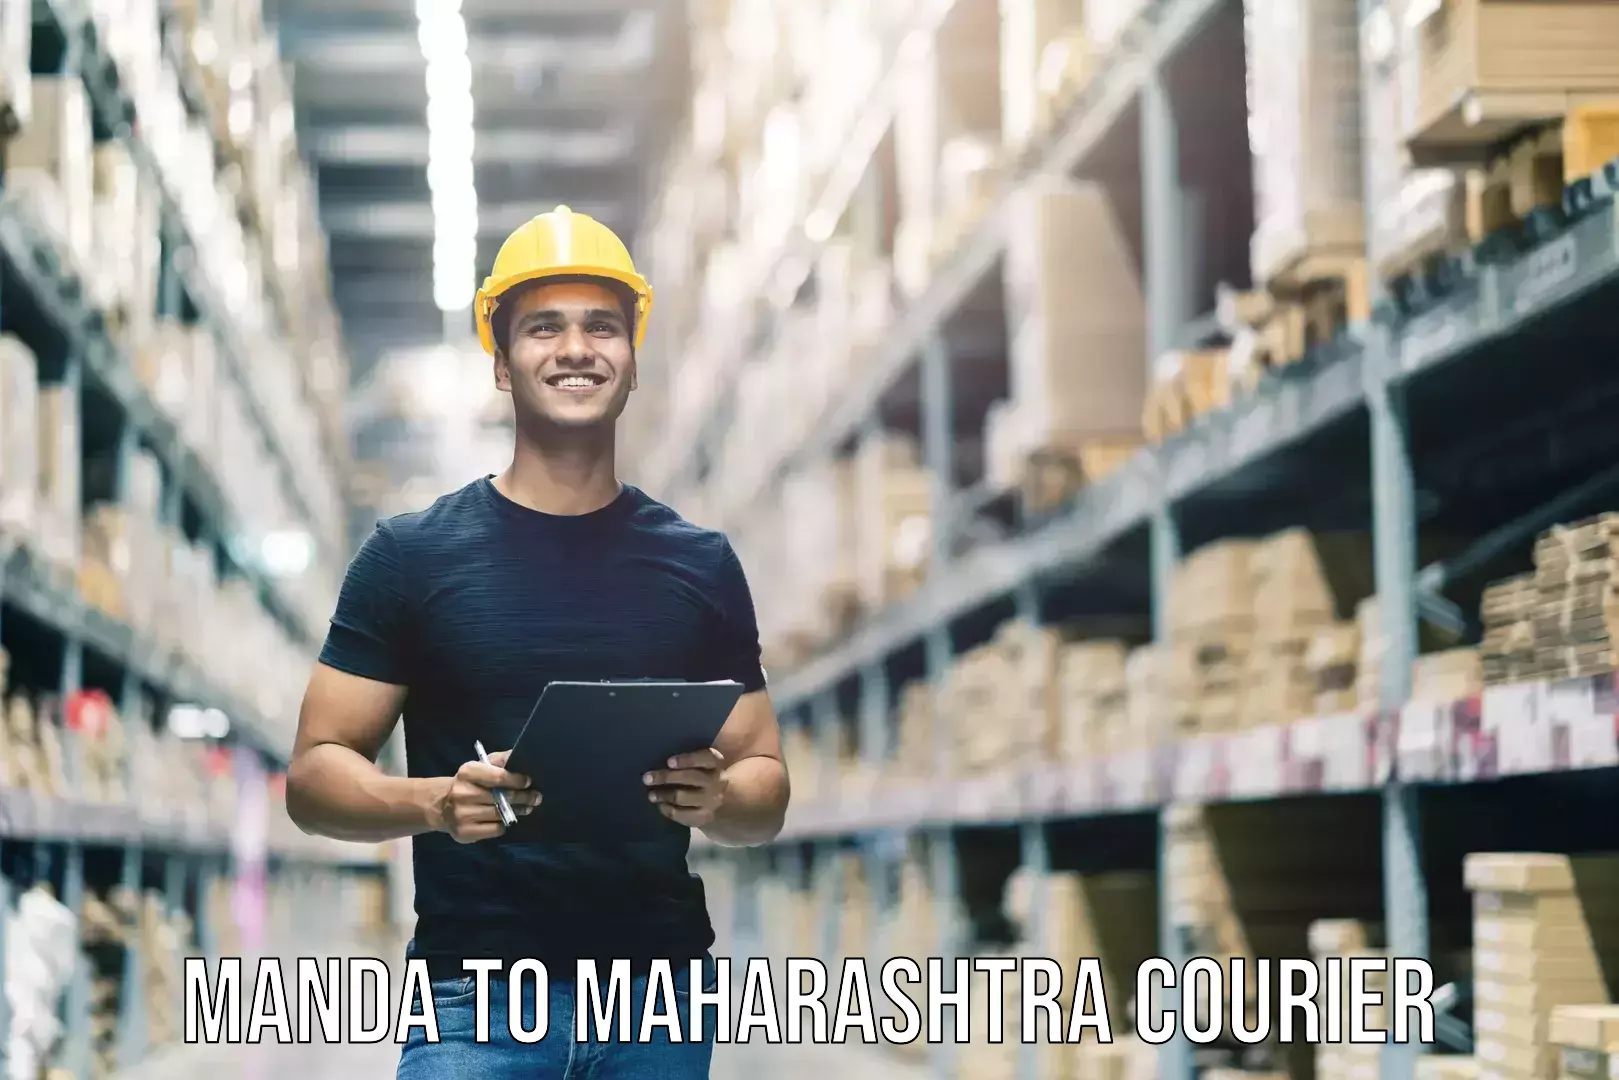 Baggage shipping quotes Manda to Maharashtra